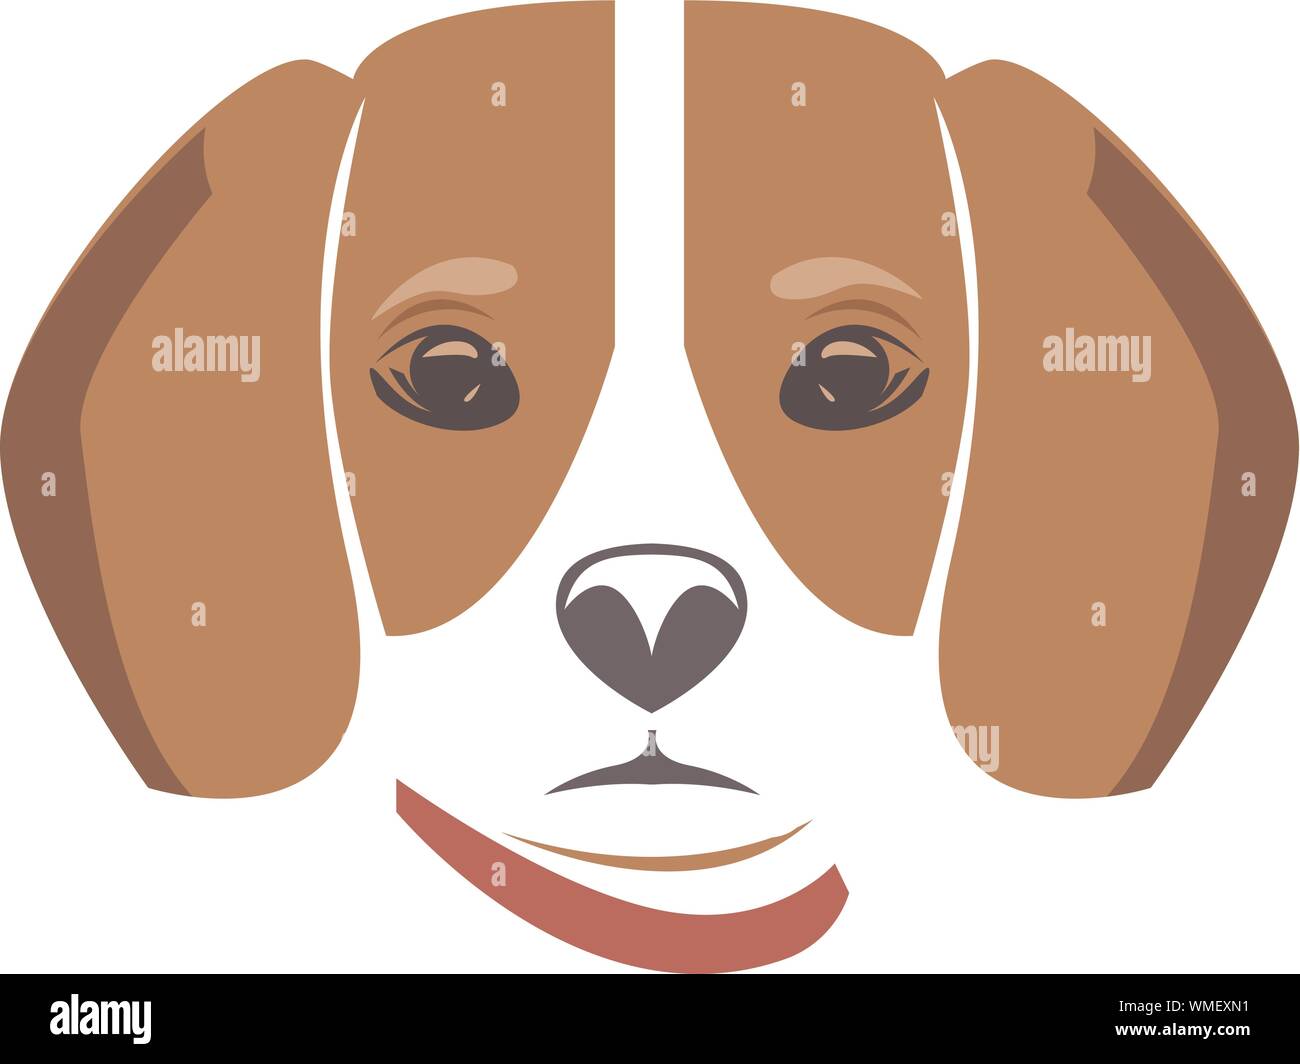 Icono de cabeza de perro. Estilo plano. La cara de perro de dibujos  animados. Ilustración vectorial aislado en blanco. Silueta simple. Concepto  del logotipo de animales. Plantilla de diseño de logotipo Imagen